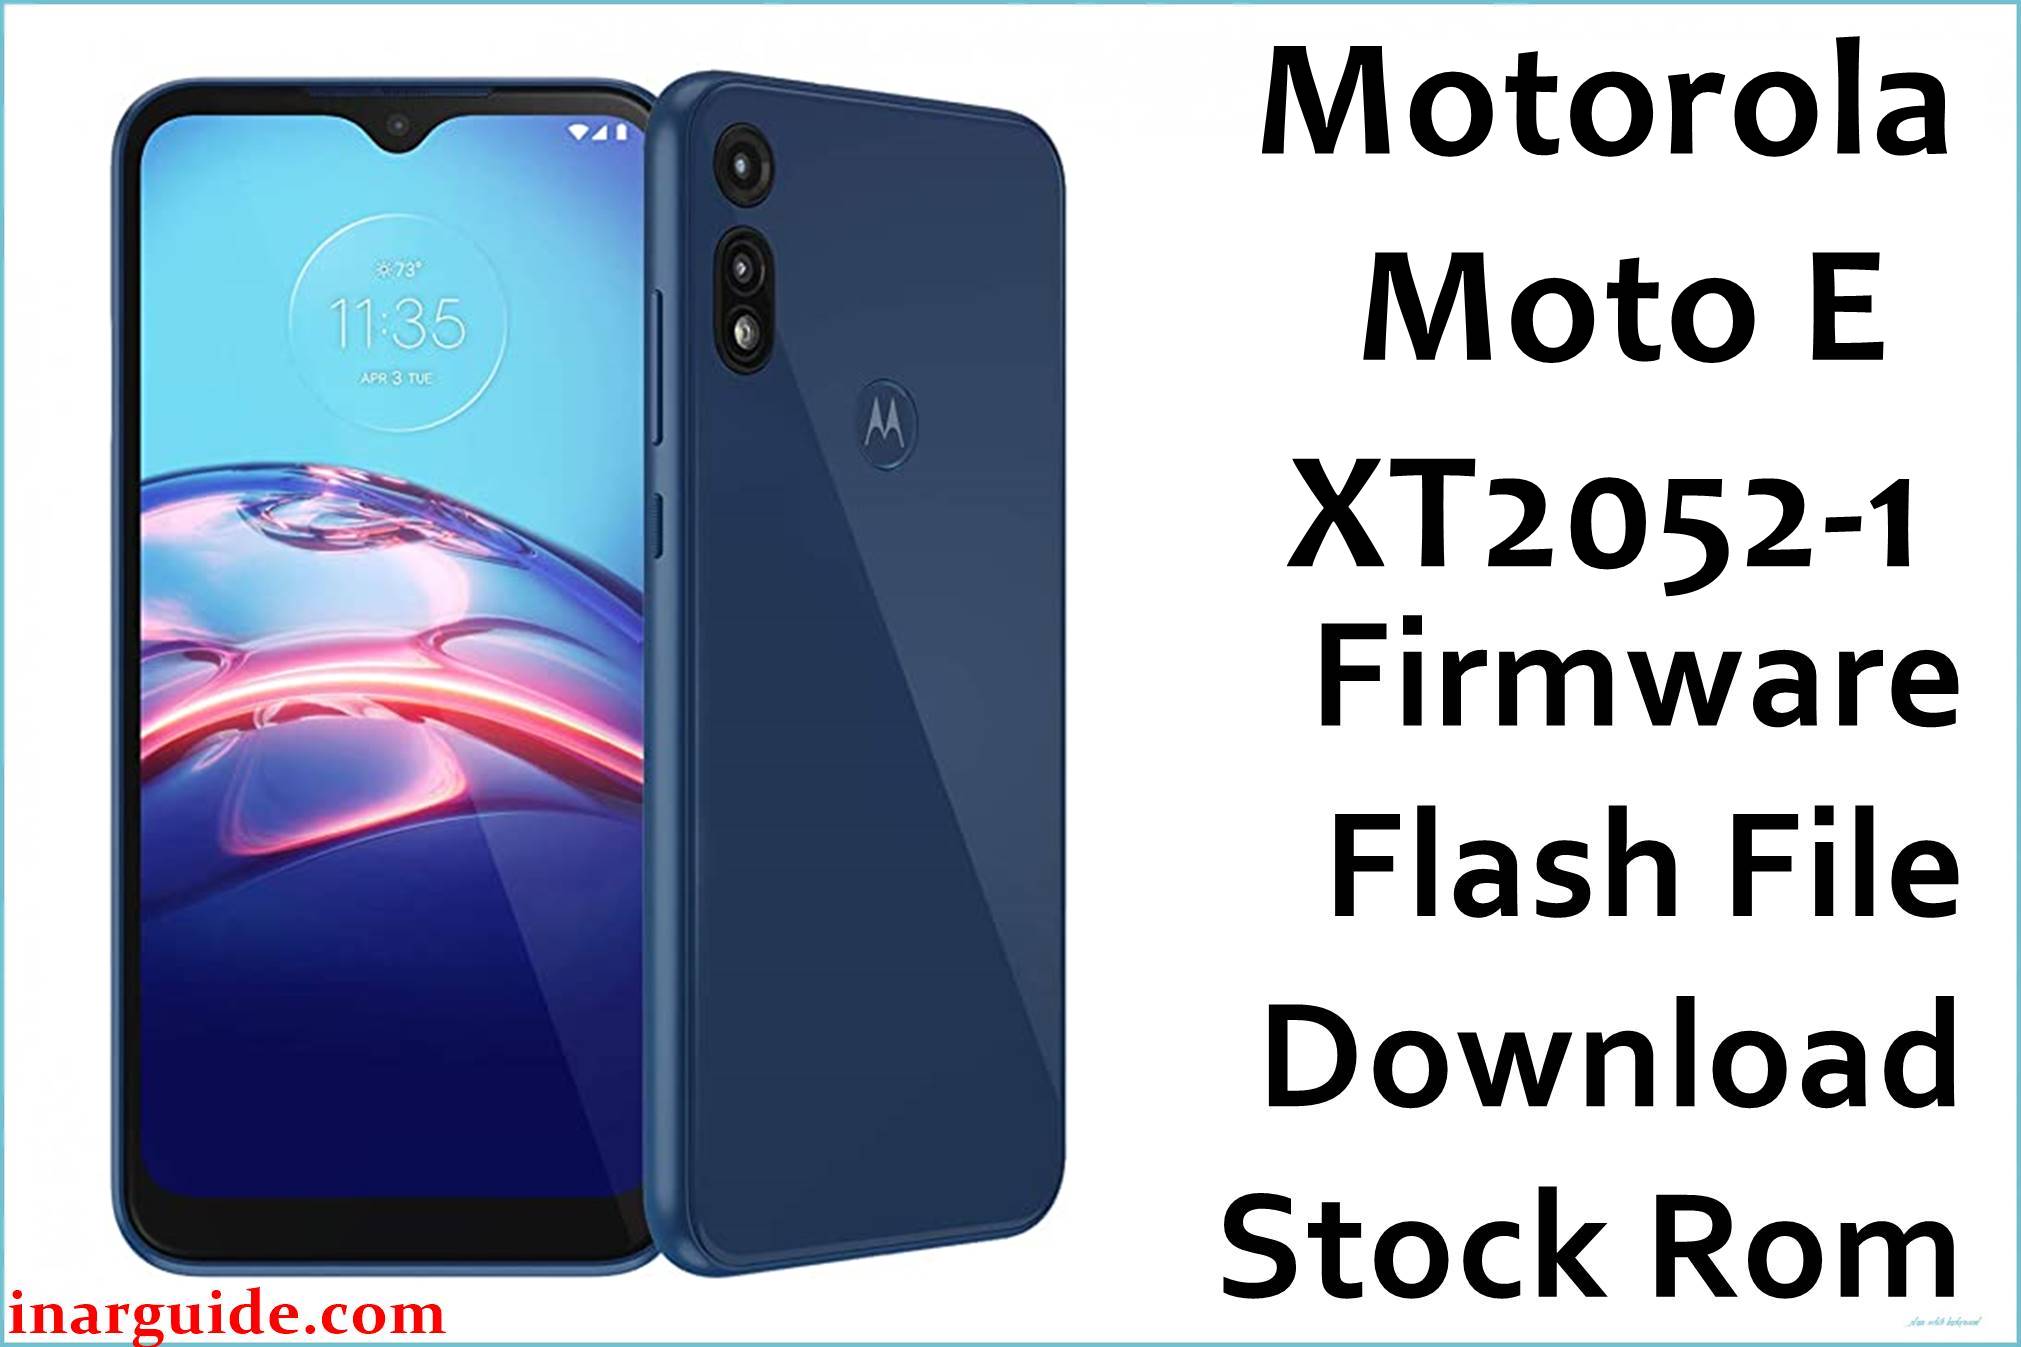 Motorola Moto E XT2052-1